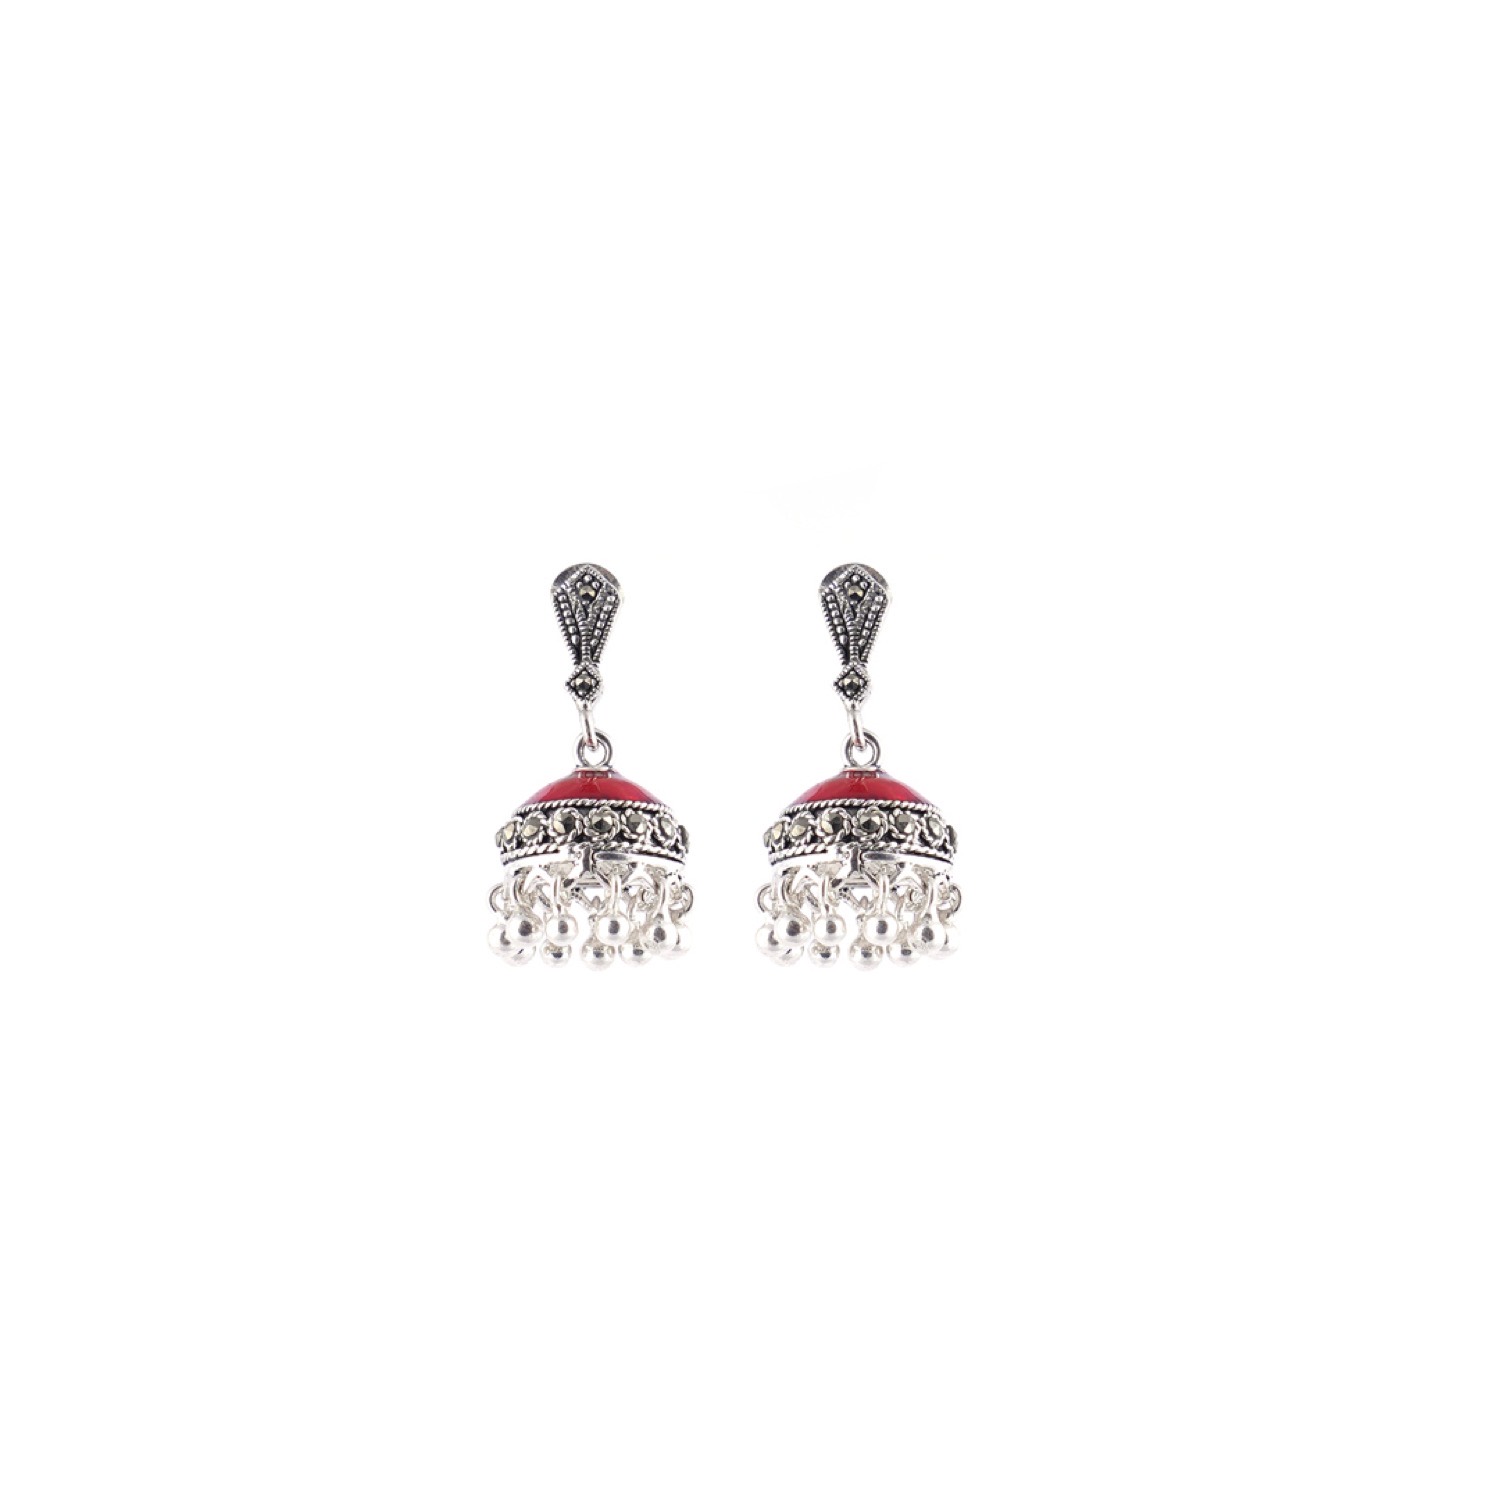 varam_earrings_102022_red_enameled_with_silver_bead_dangling_jumkha_silver_earrings-1